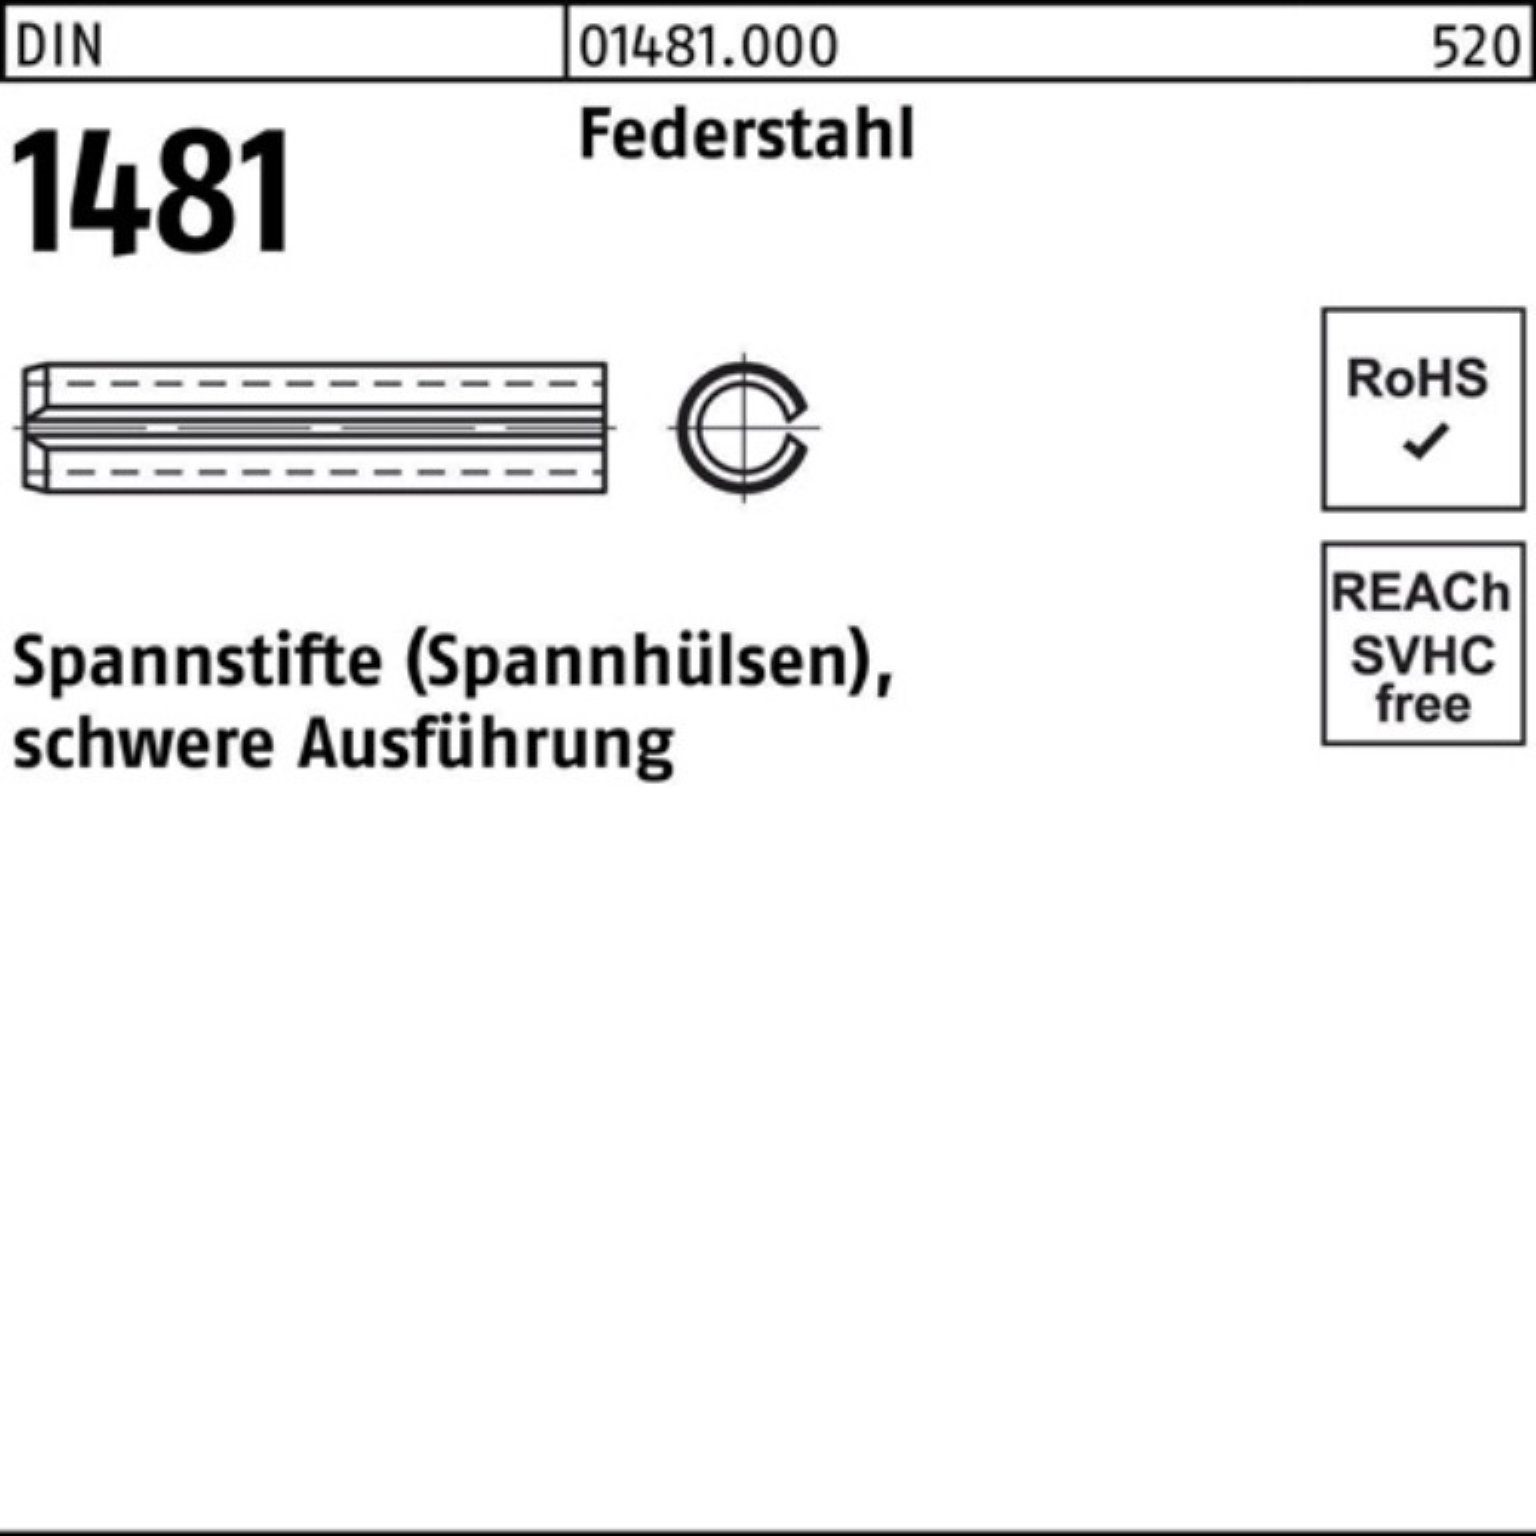 Reyher Spannstift 200er Pack Spannstift DIN 20 1481 schwere 12 Ausführung 3x Federstahl